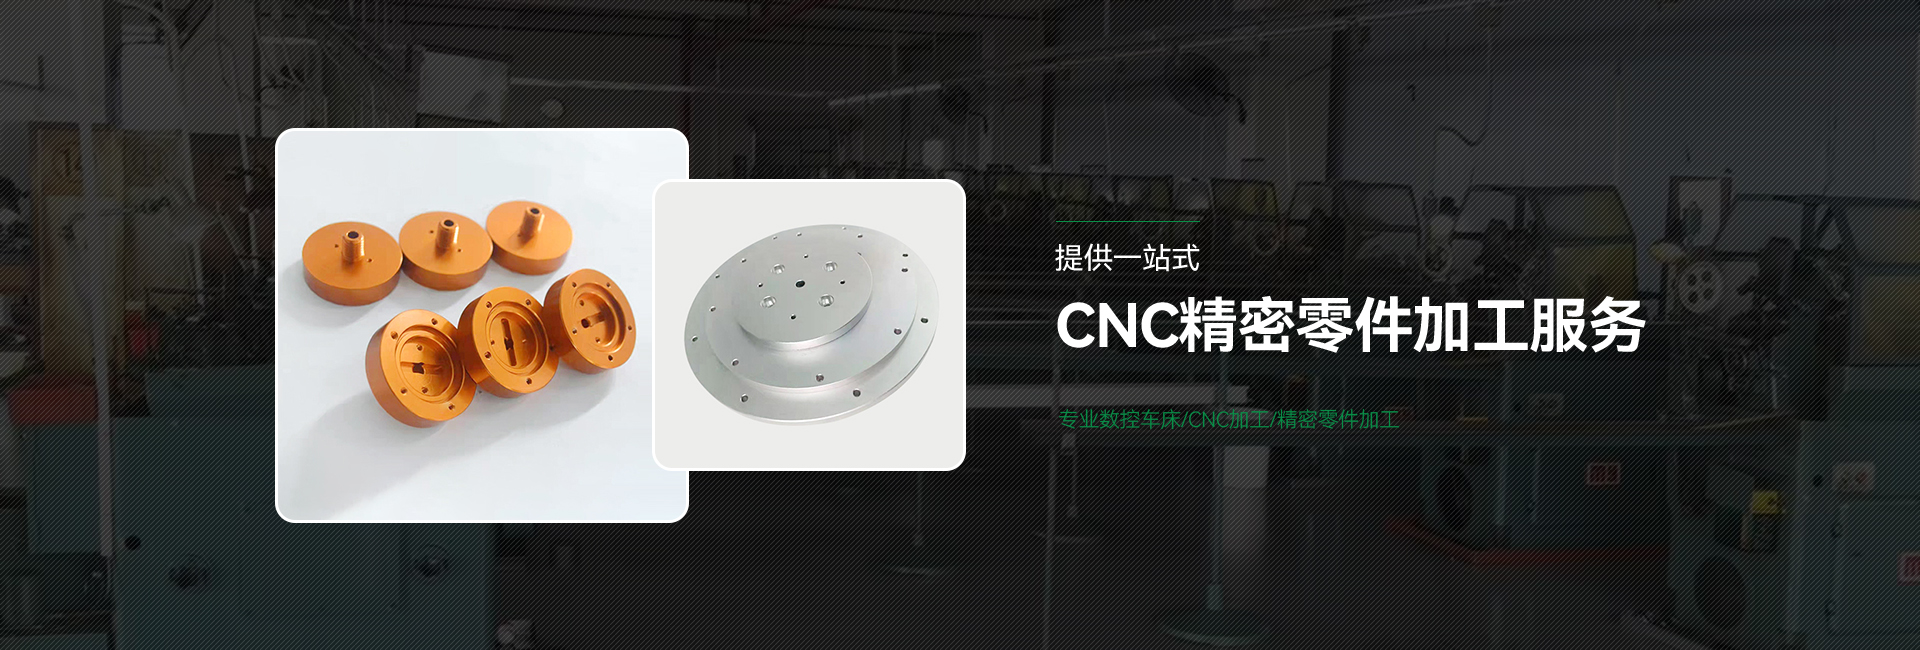 五軸cnc精密零部件加工,鋁合金加工定制,機械零件加工廠家